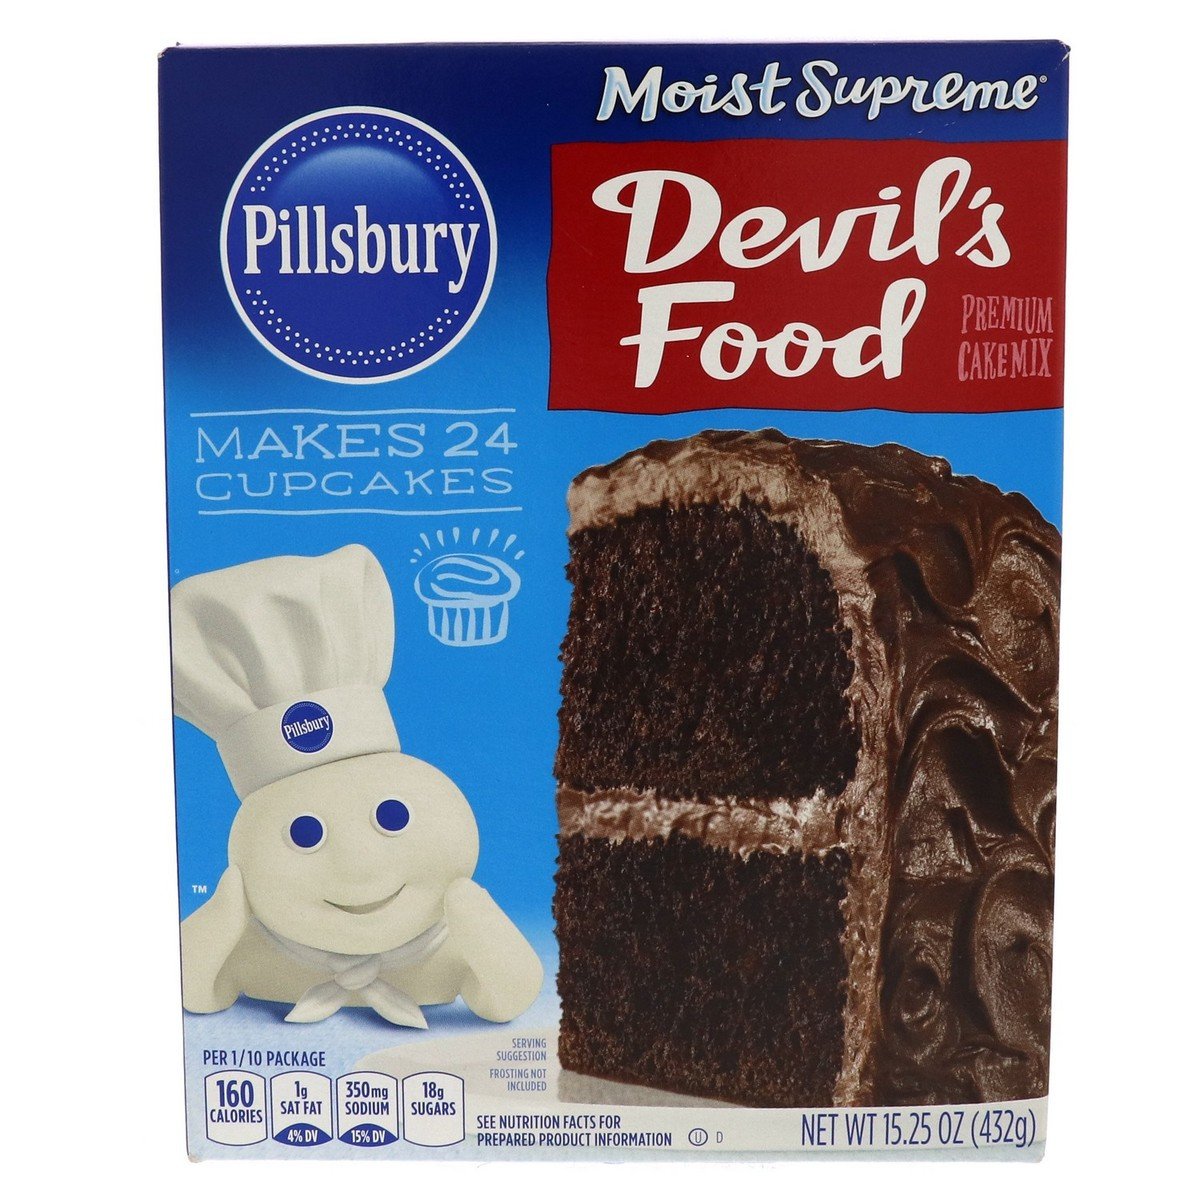 Pillsbury Moist Supreme Devil's Food Premium Cake Mix 432 g